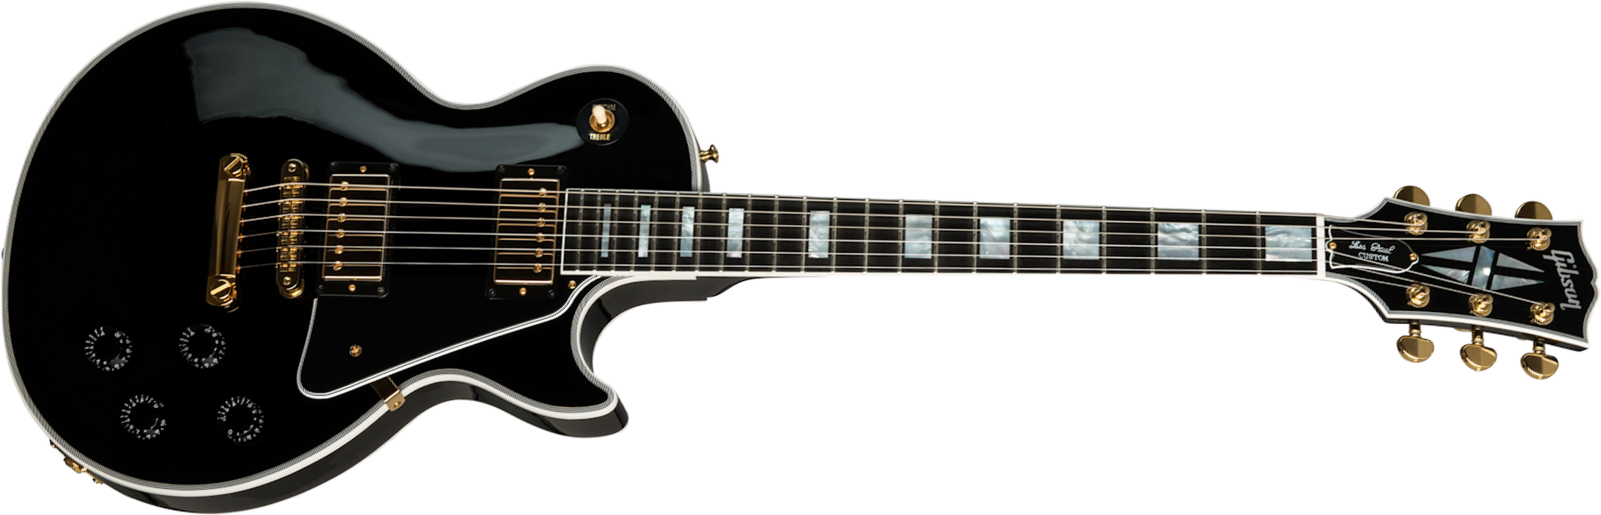 Gibson Custom Shop Les Paul Custom 2019 2h Ht Eb - Ebony - Guitarra eléctrica de corte único. - Main picture